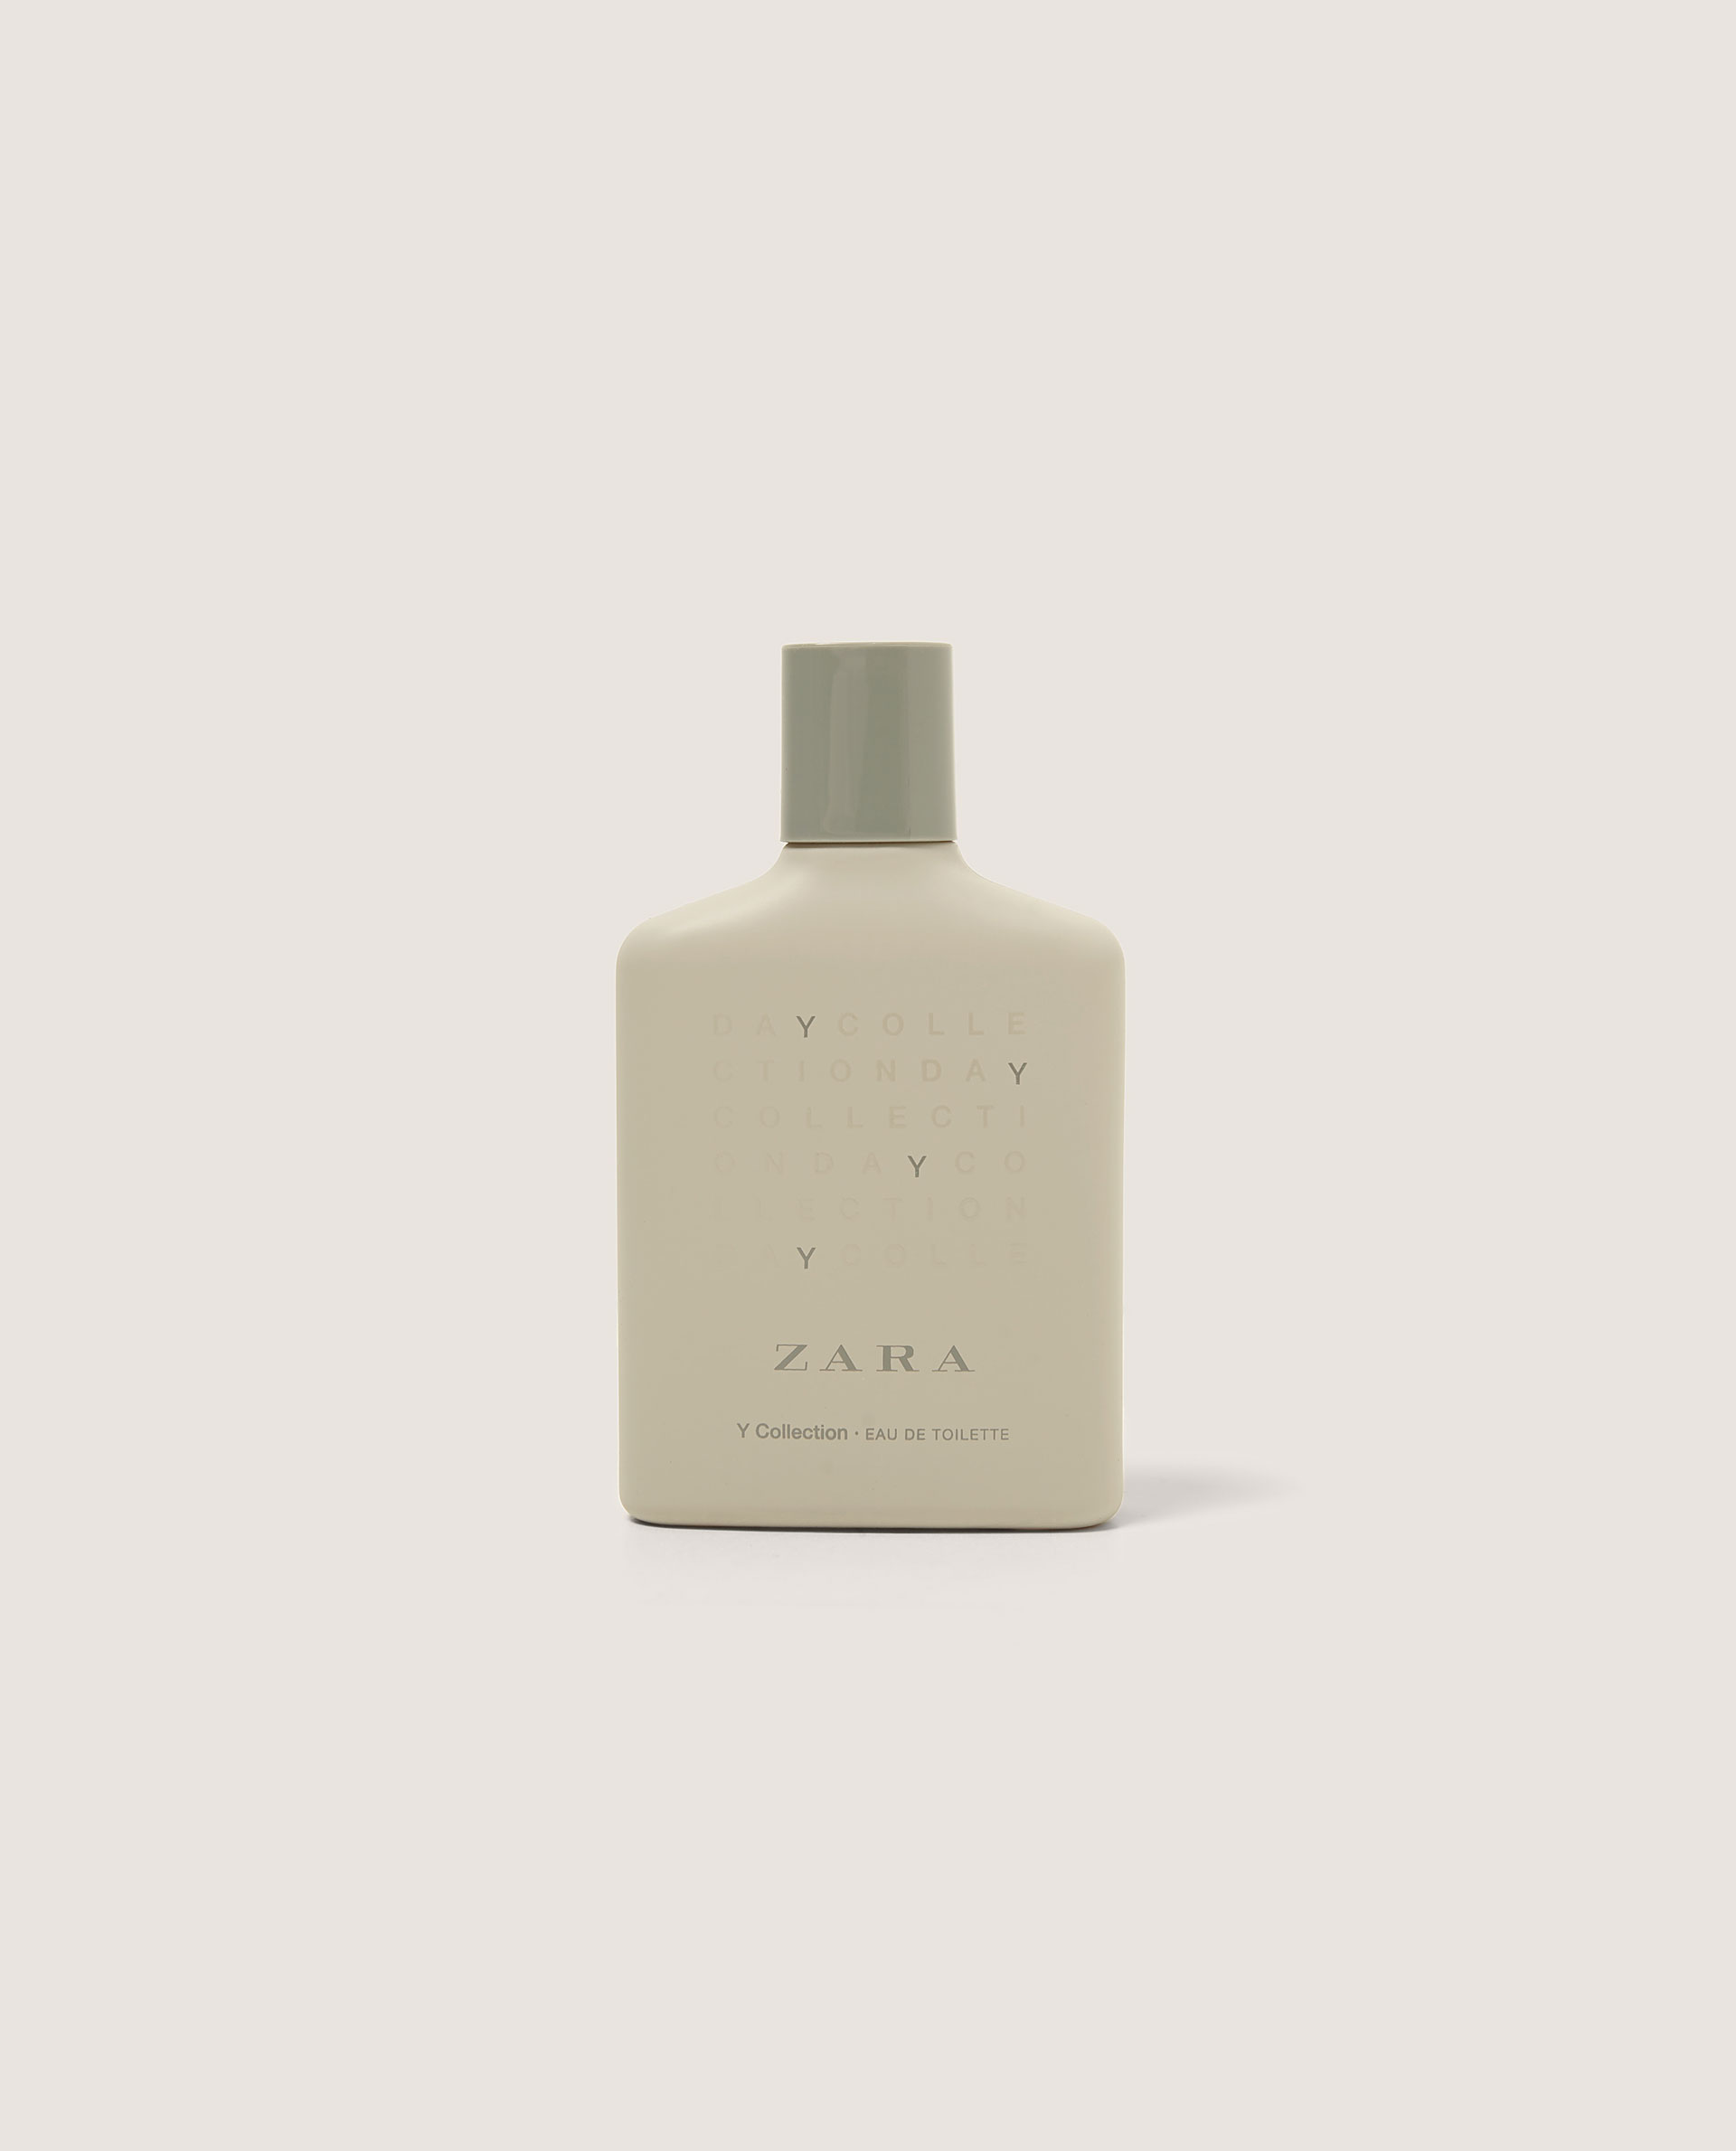 Y Collection Zara одеколон — аромат 